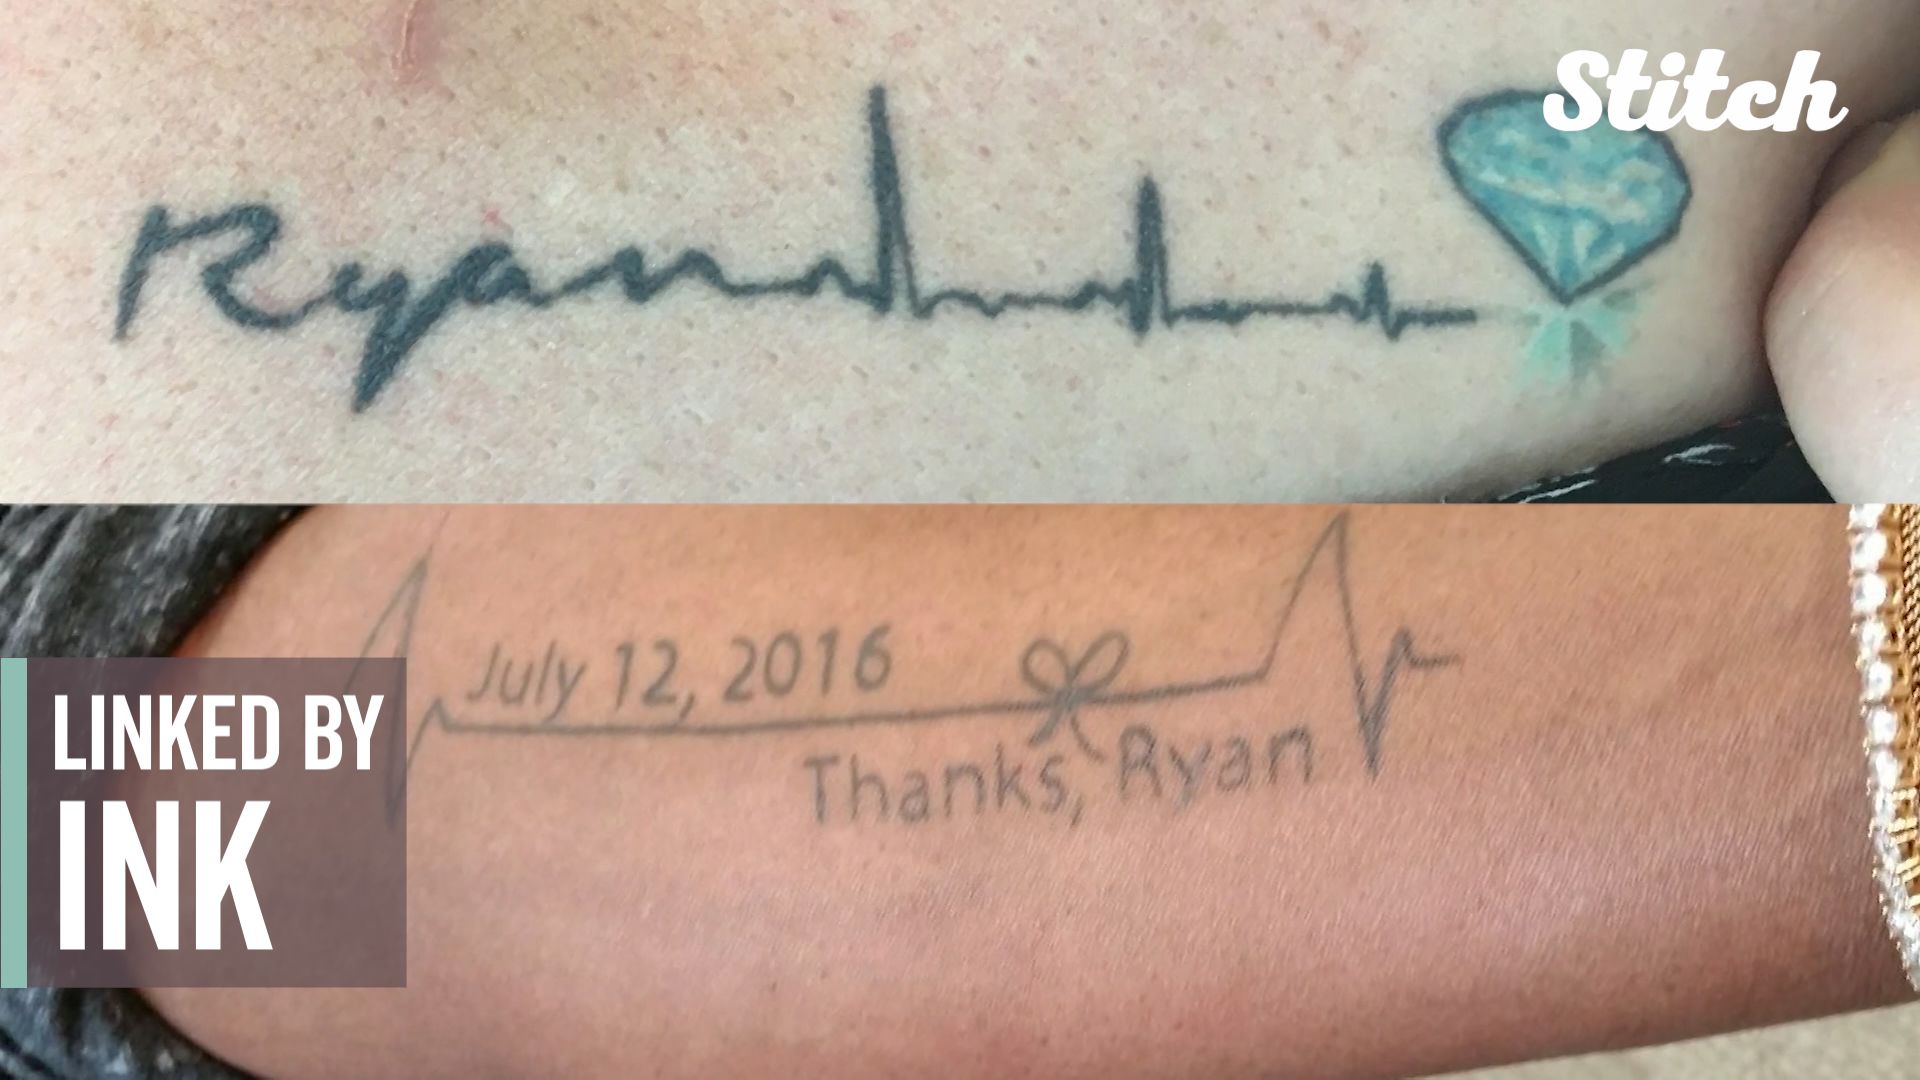 organ donor tattoo ideas - Google Search | Tattoos, Ribbon tattoos, Disney  tattoos